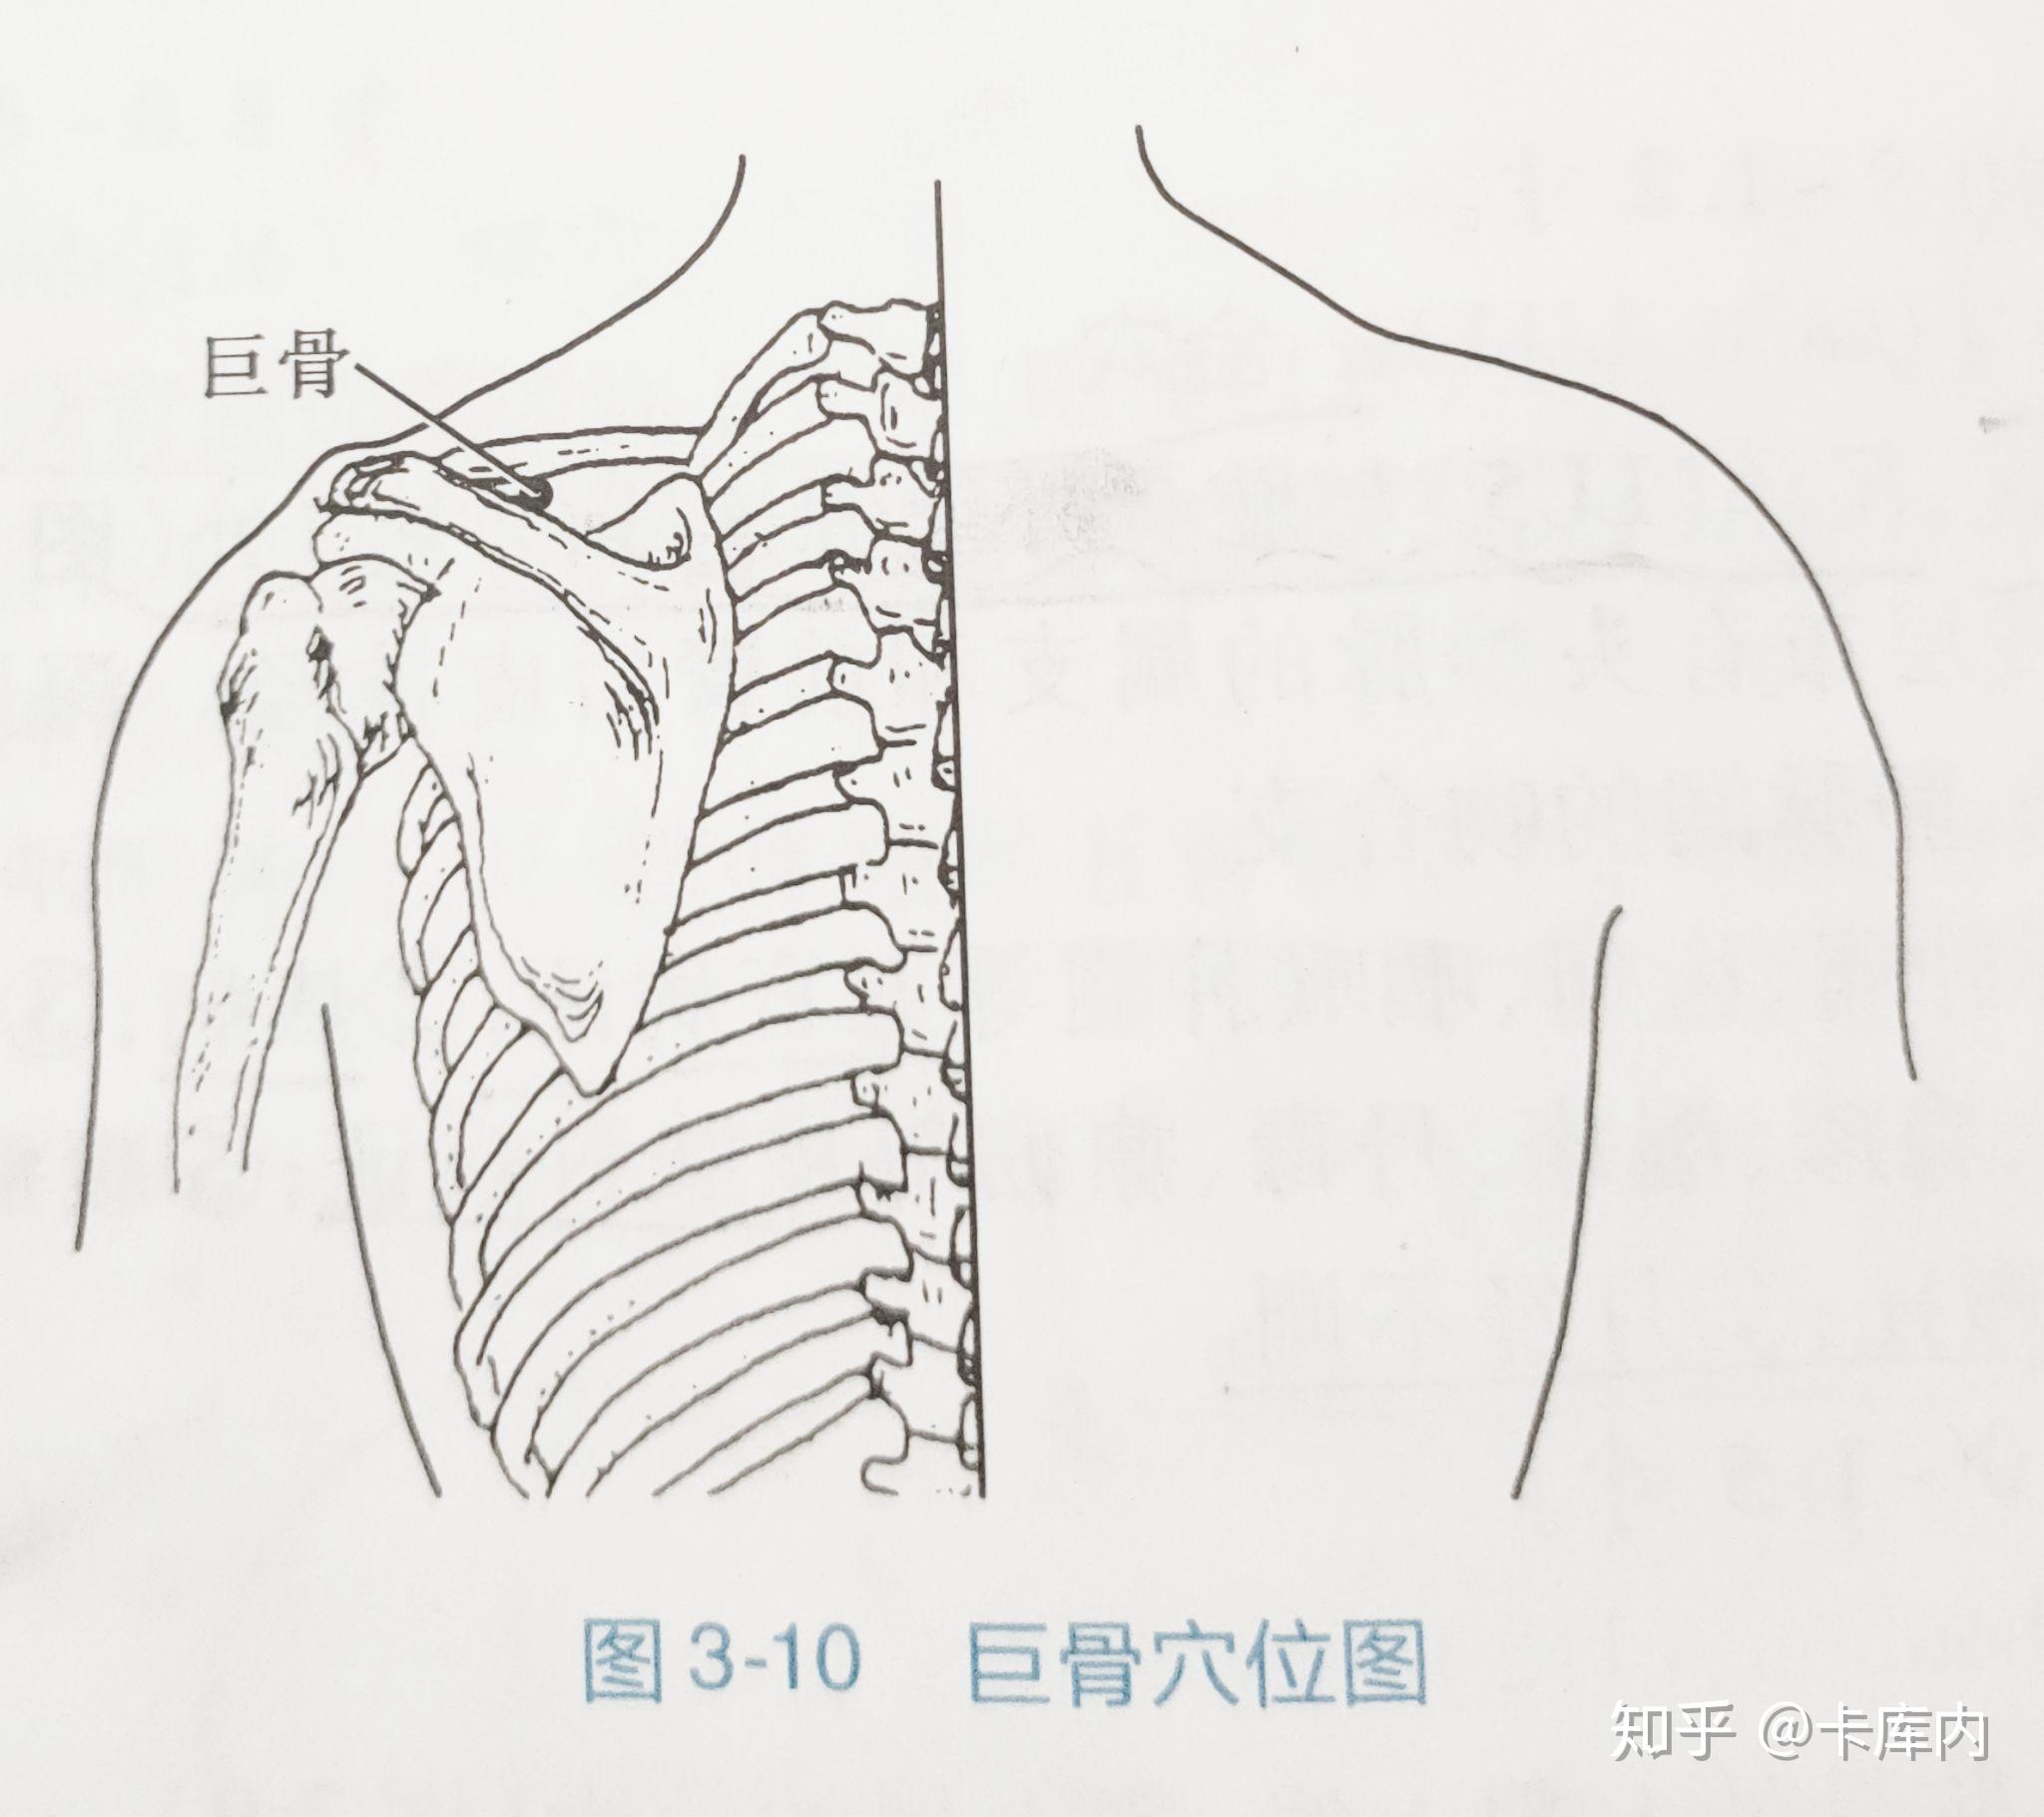 375. 颈部矢状断面(4)-基础医学-医学